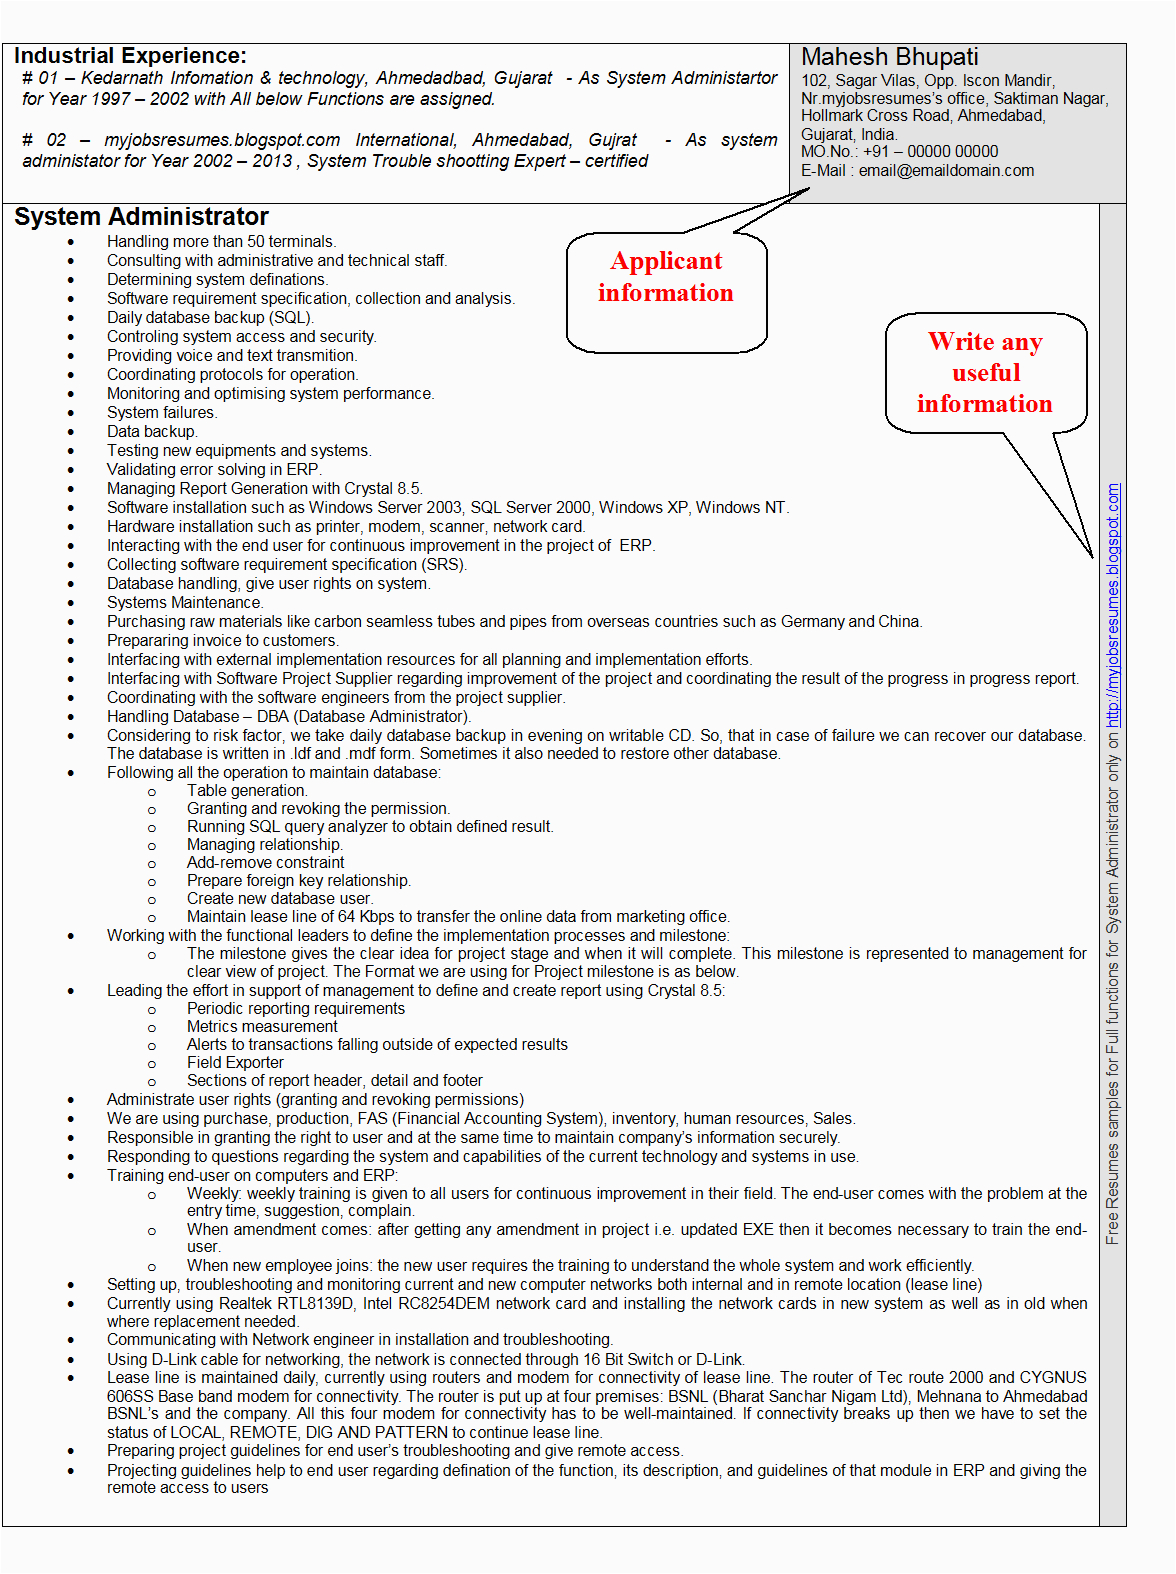 Sample Resume for Windows Server Administrator Fresher Fresh Jobs and Free Resume Samples for Jobs Cv for System